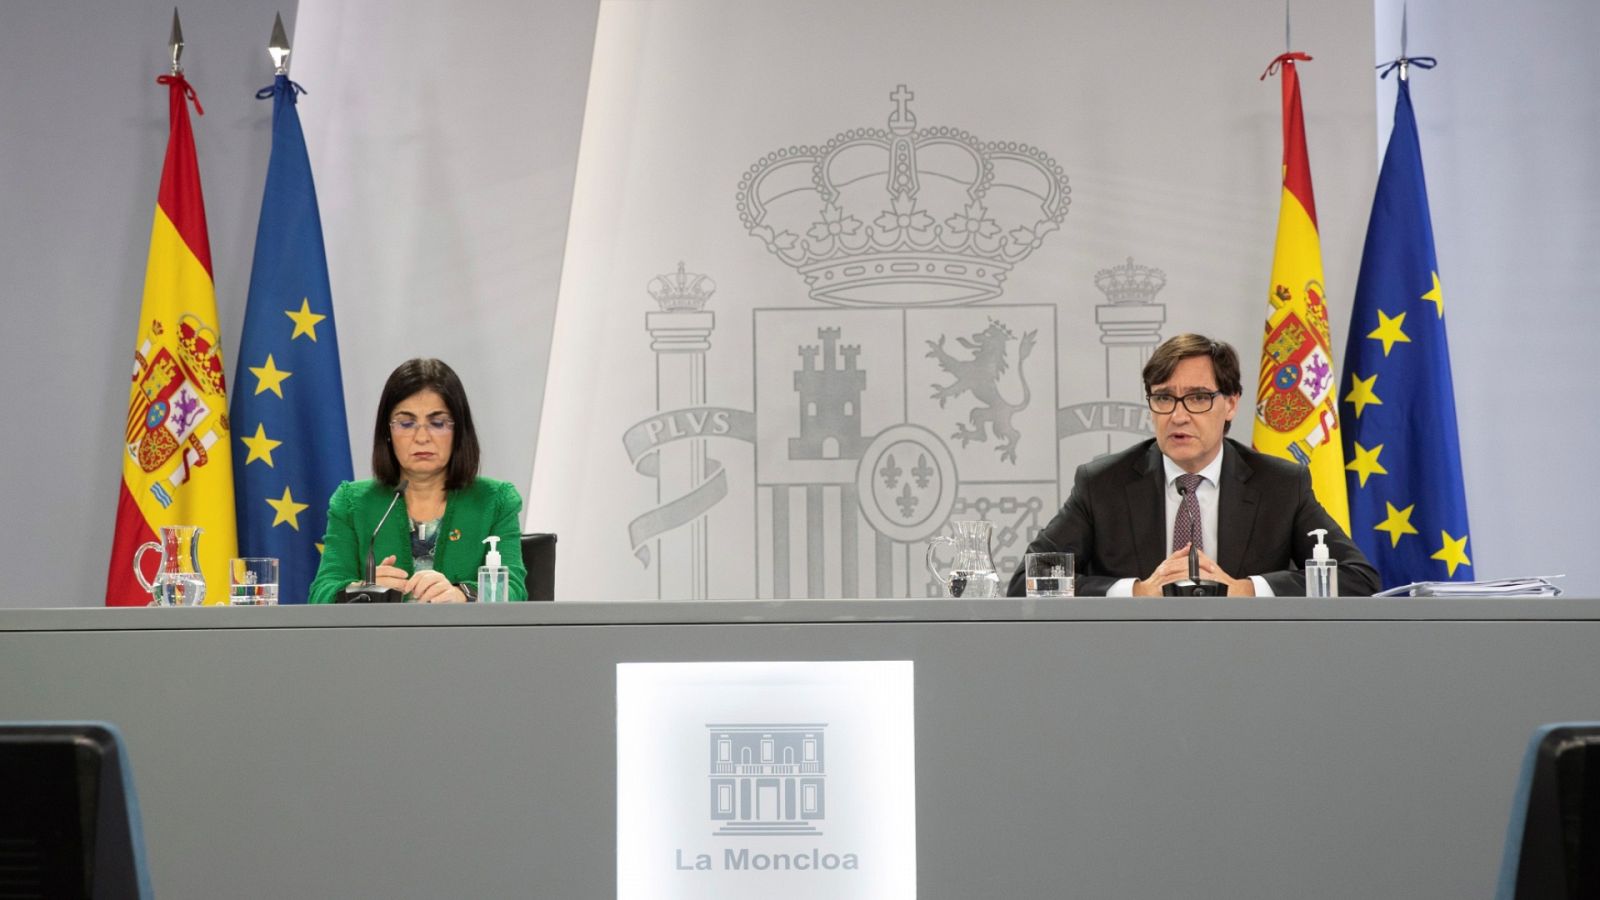 Especial informativo - Comparecencia del ministro de Sanidad, y ministra de Política Territorial - 11/11/20 - RTVE.es